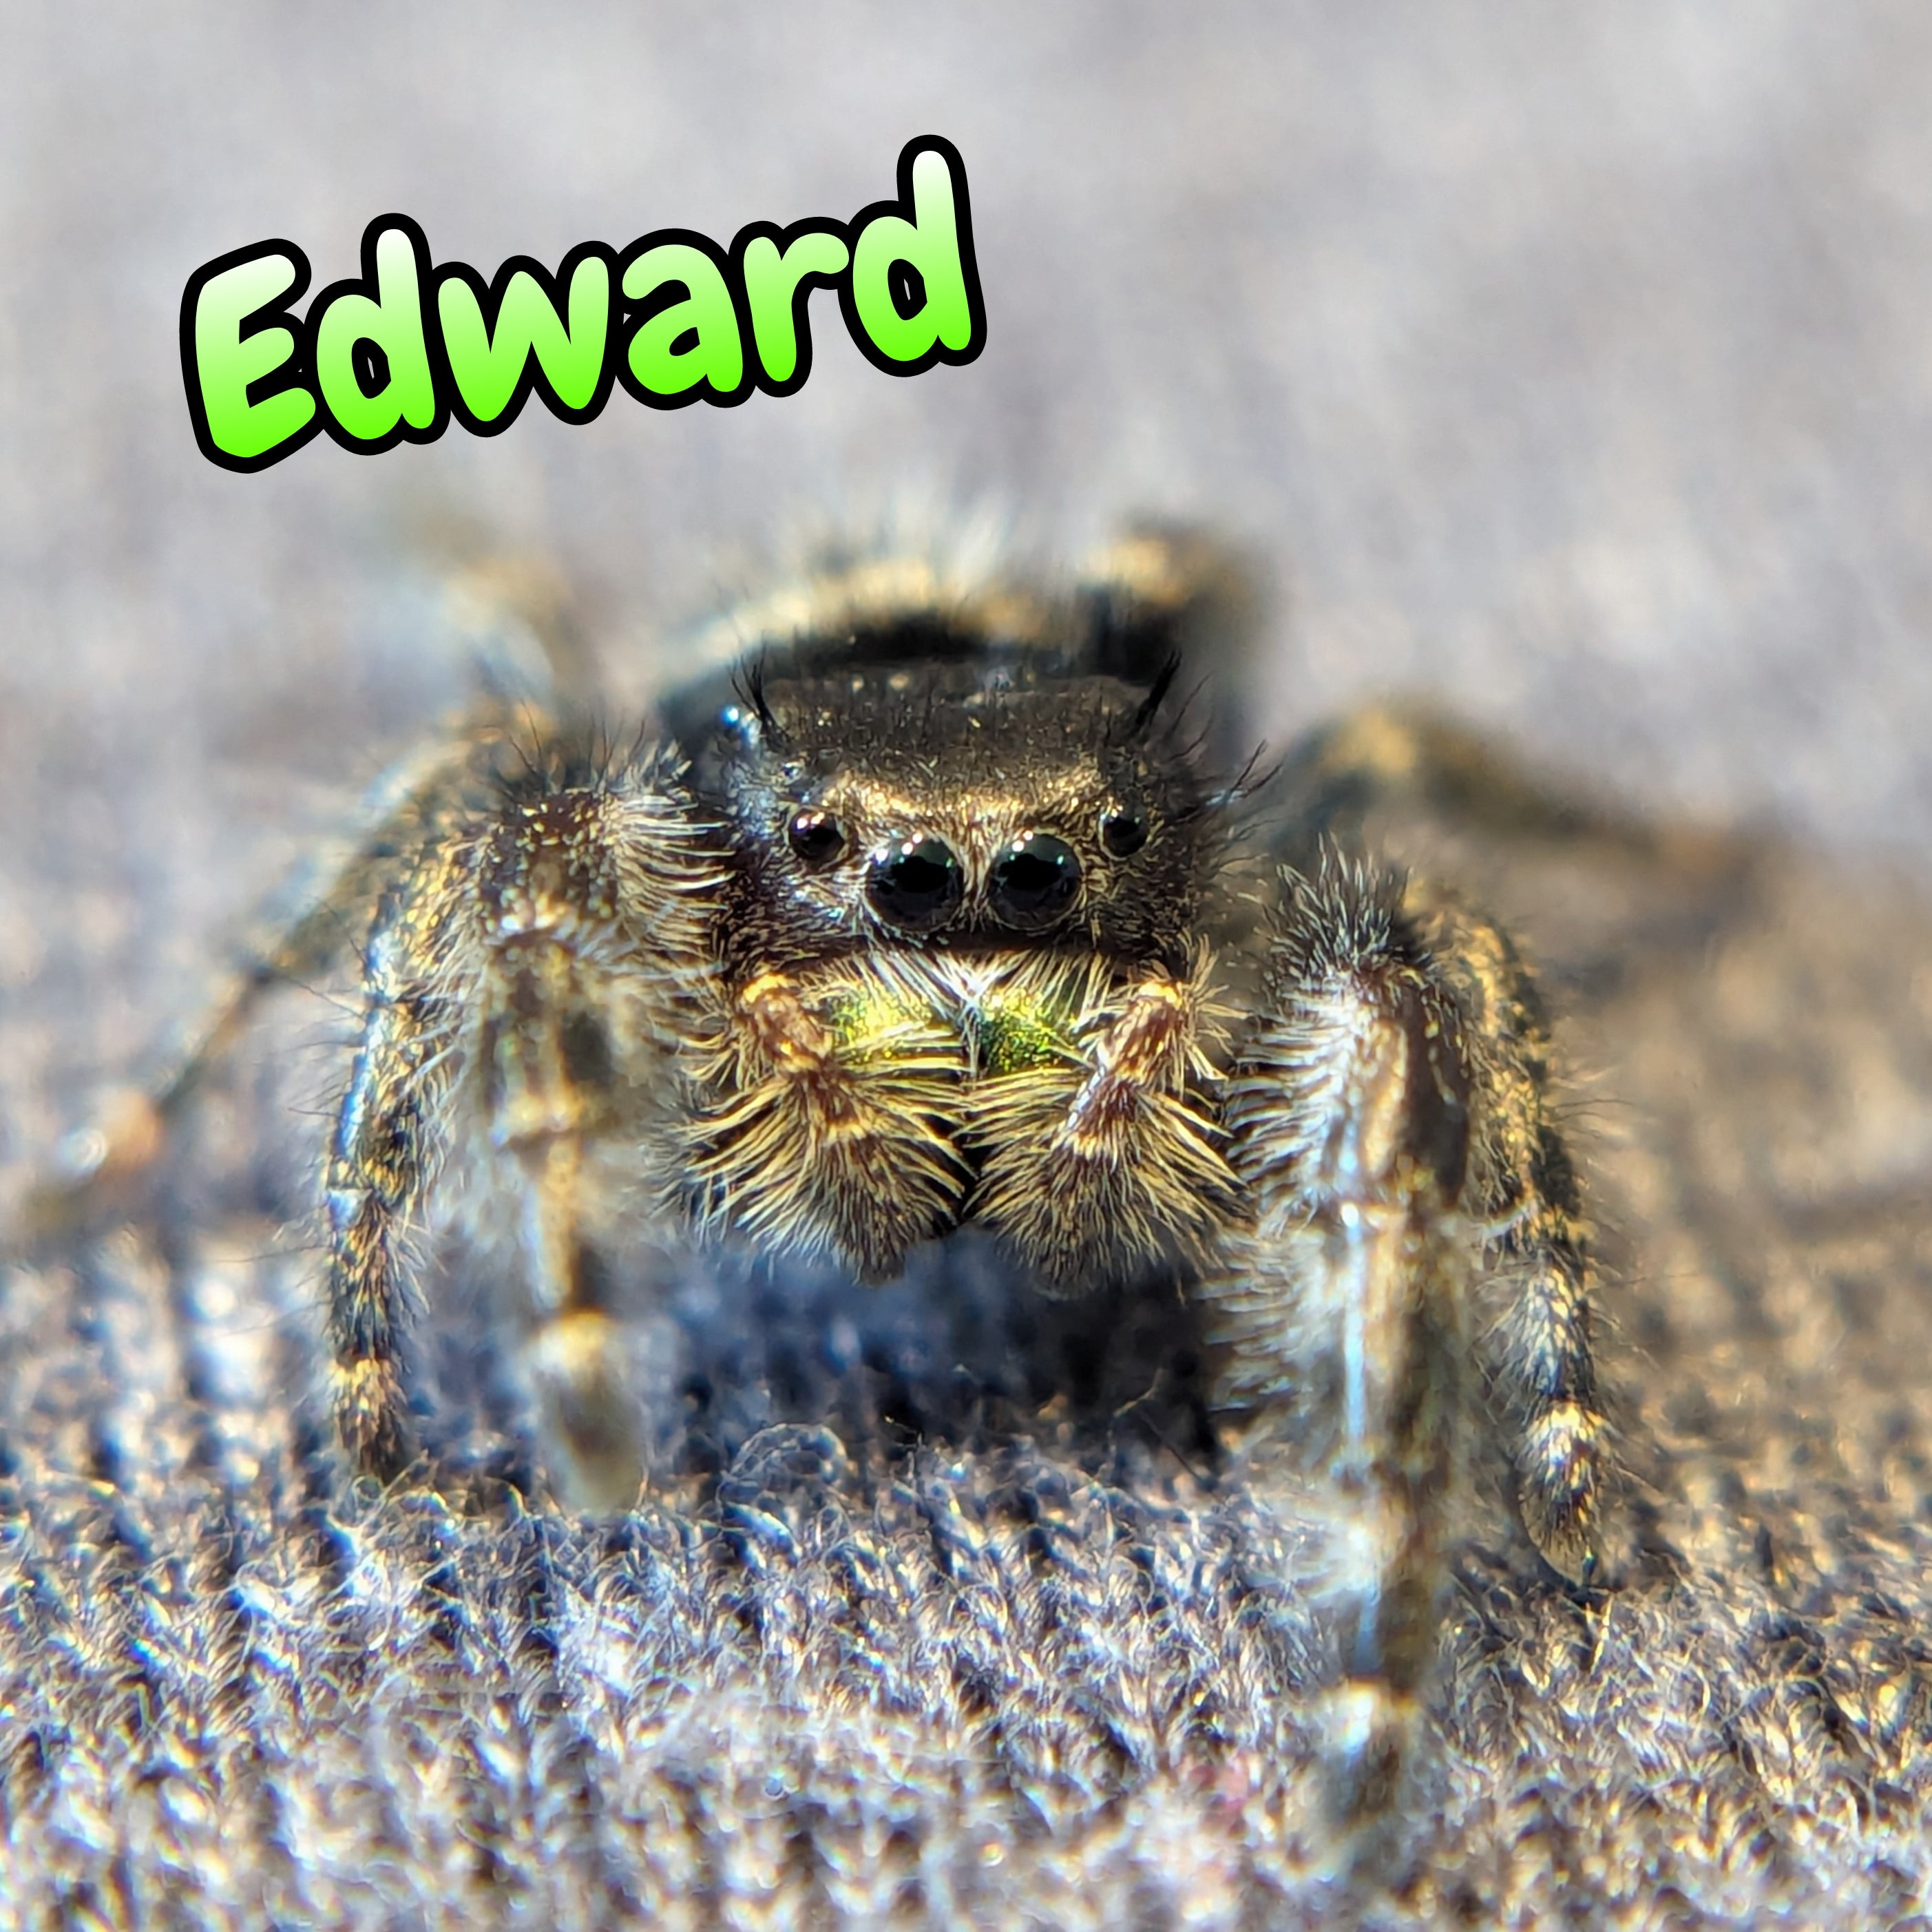 Audax Jumping Spider "Edward"